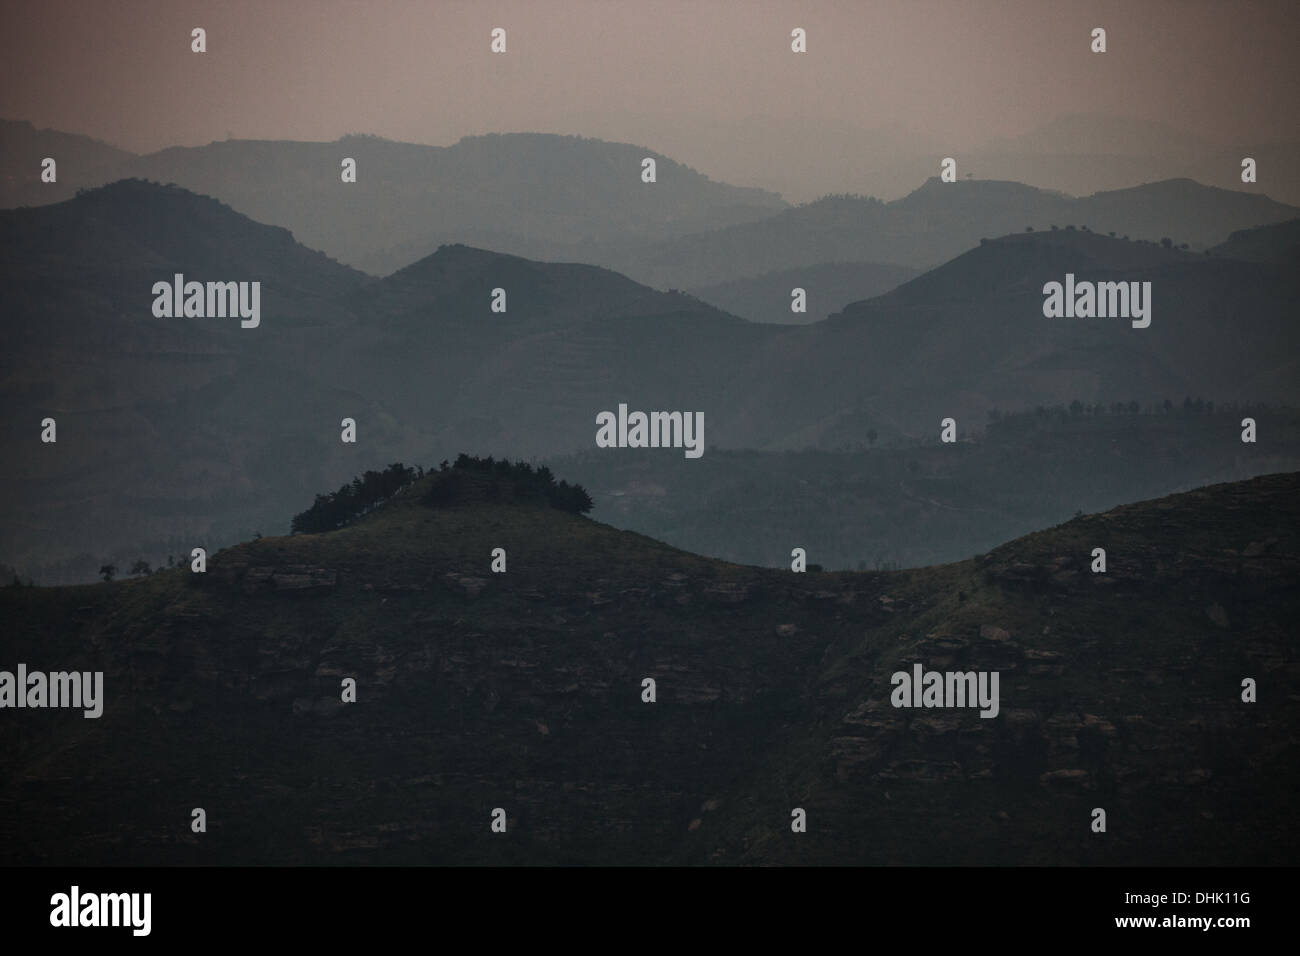 Landscape of mountain range, Shanxi Province, China Stock Photo